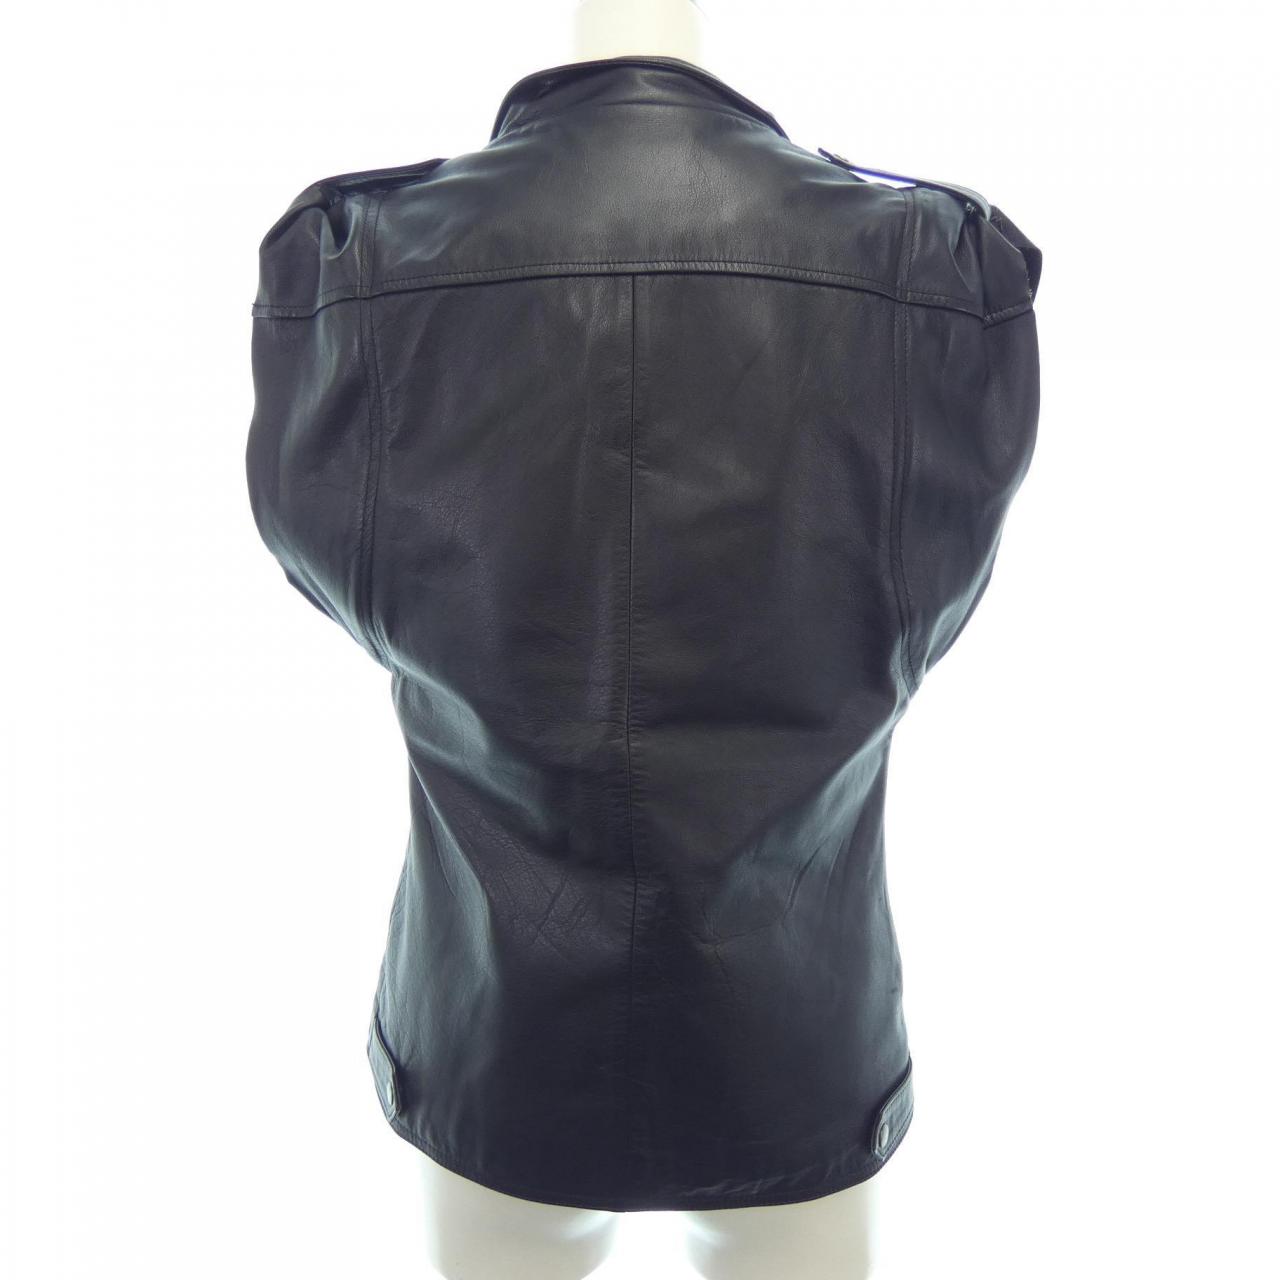 KADOYA leather jacket